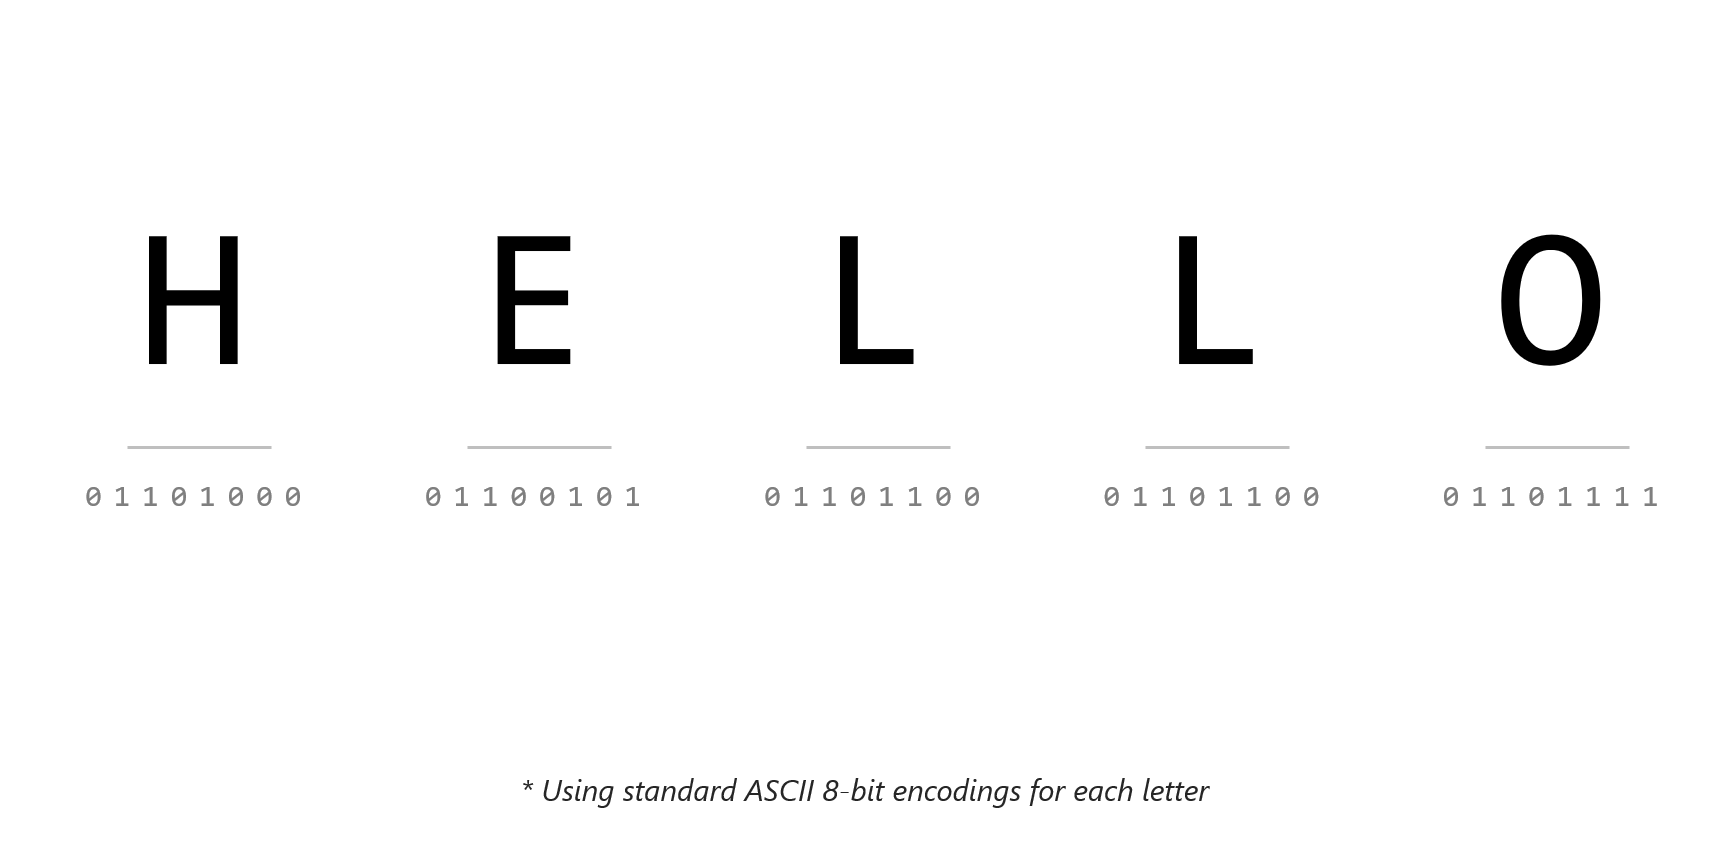 文字列 "hello" の ASCII